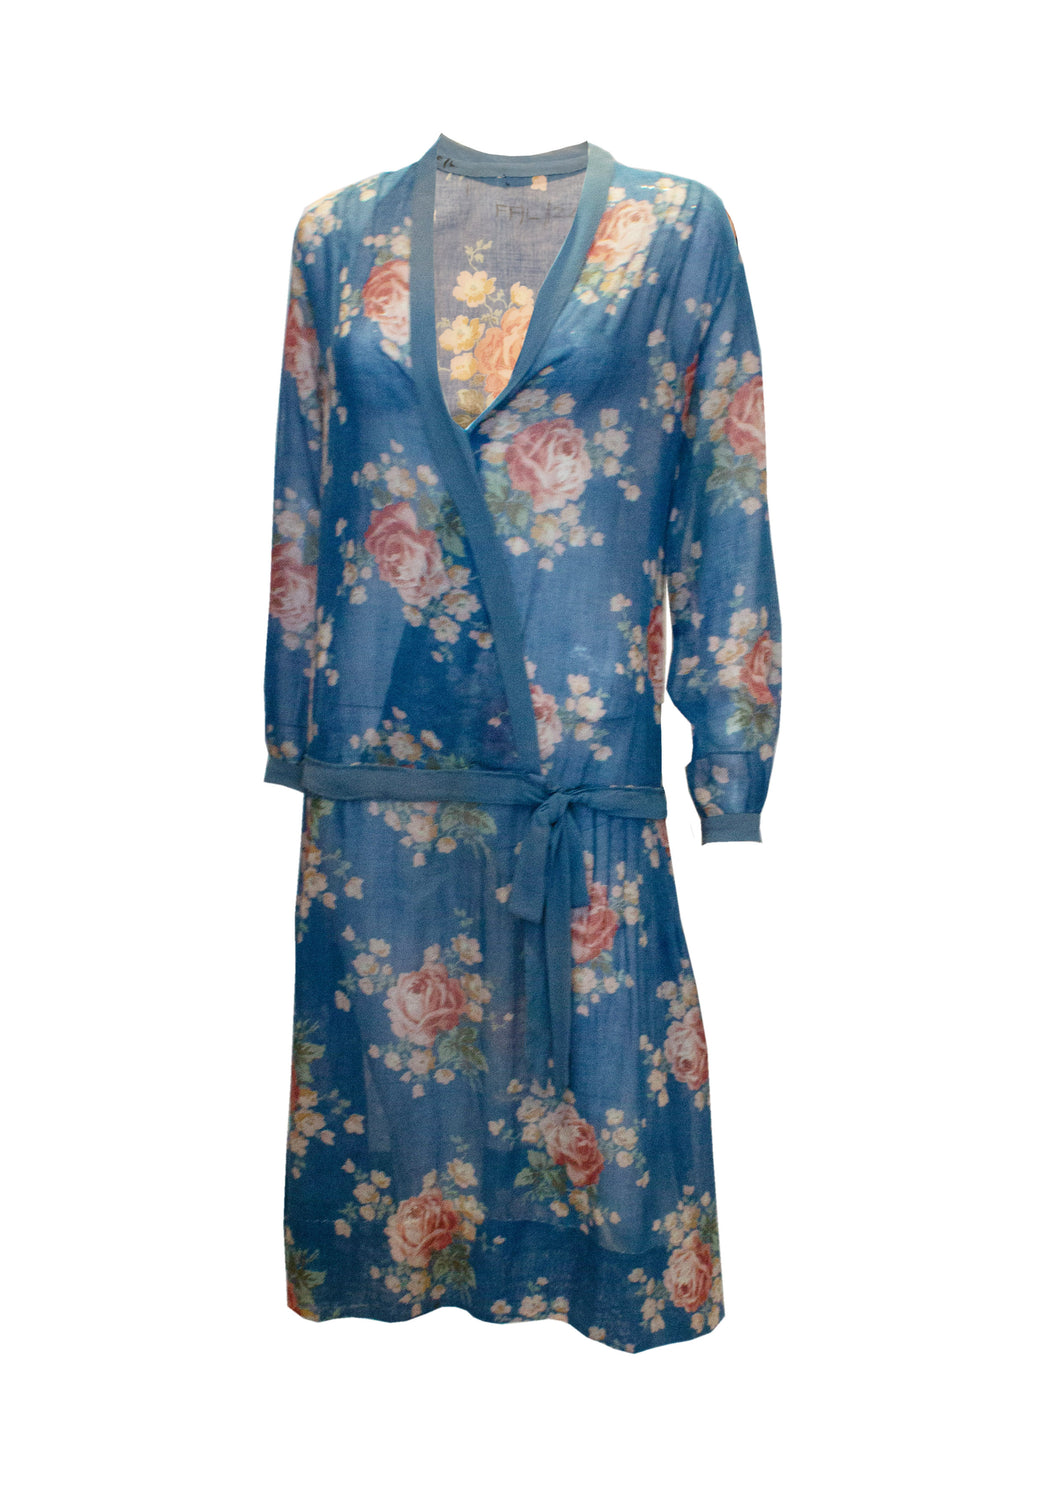 A Vintage 1920s Blue Floral Cotton Dress